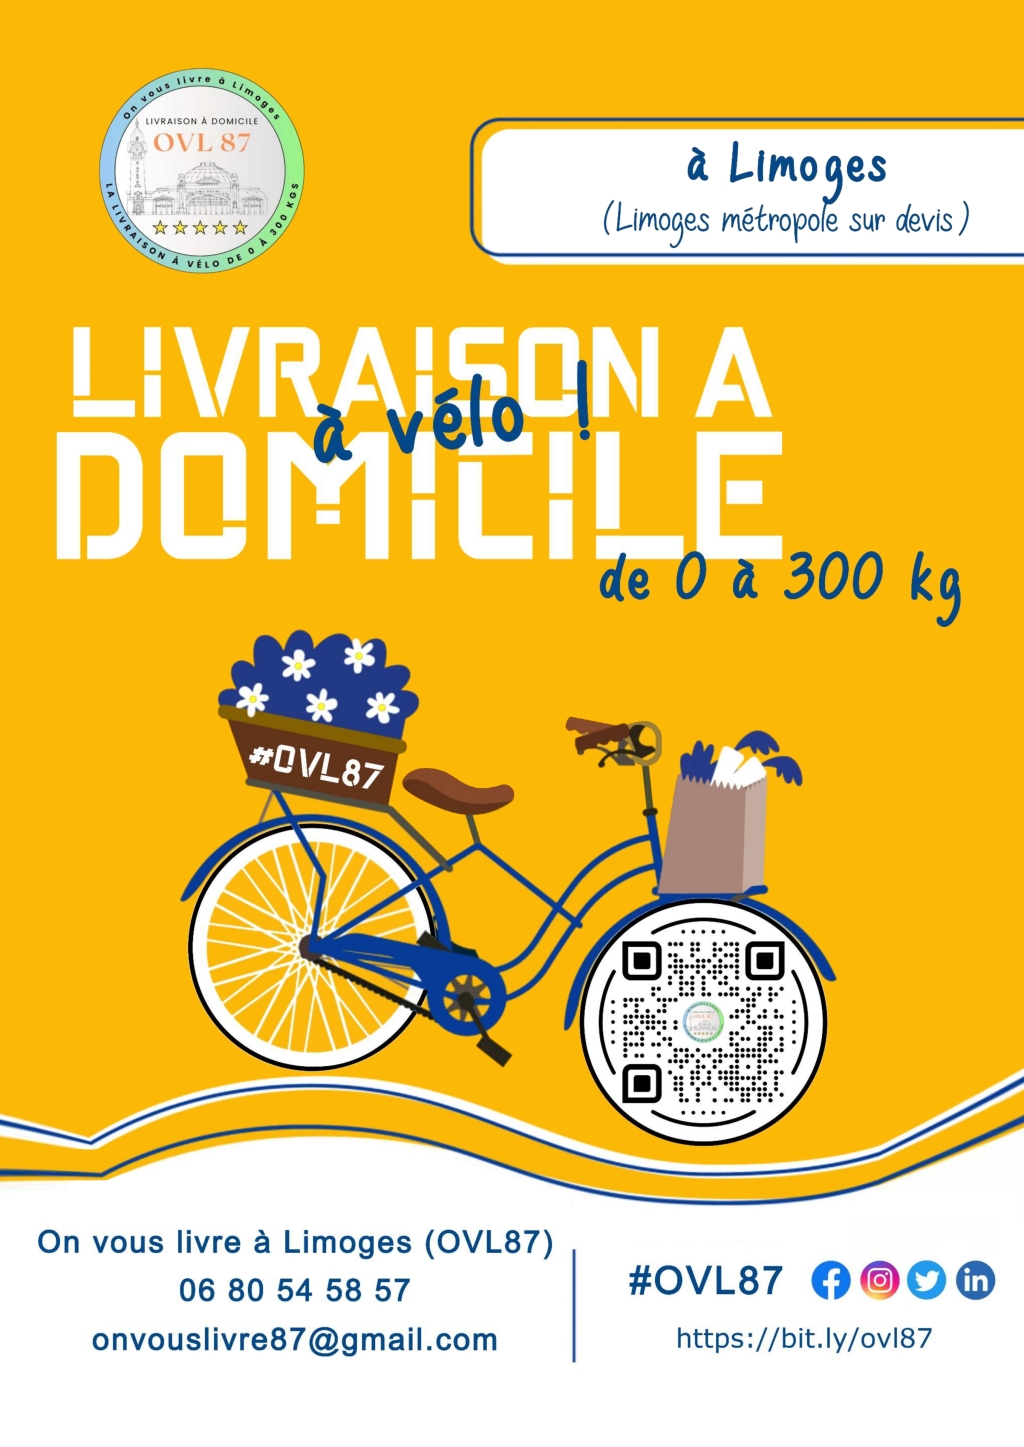 OVL87 la livraison à vélo à Limoges